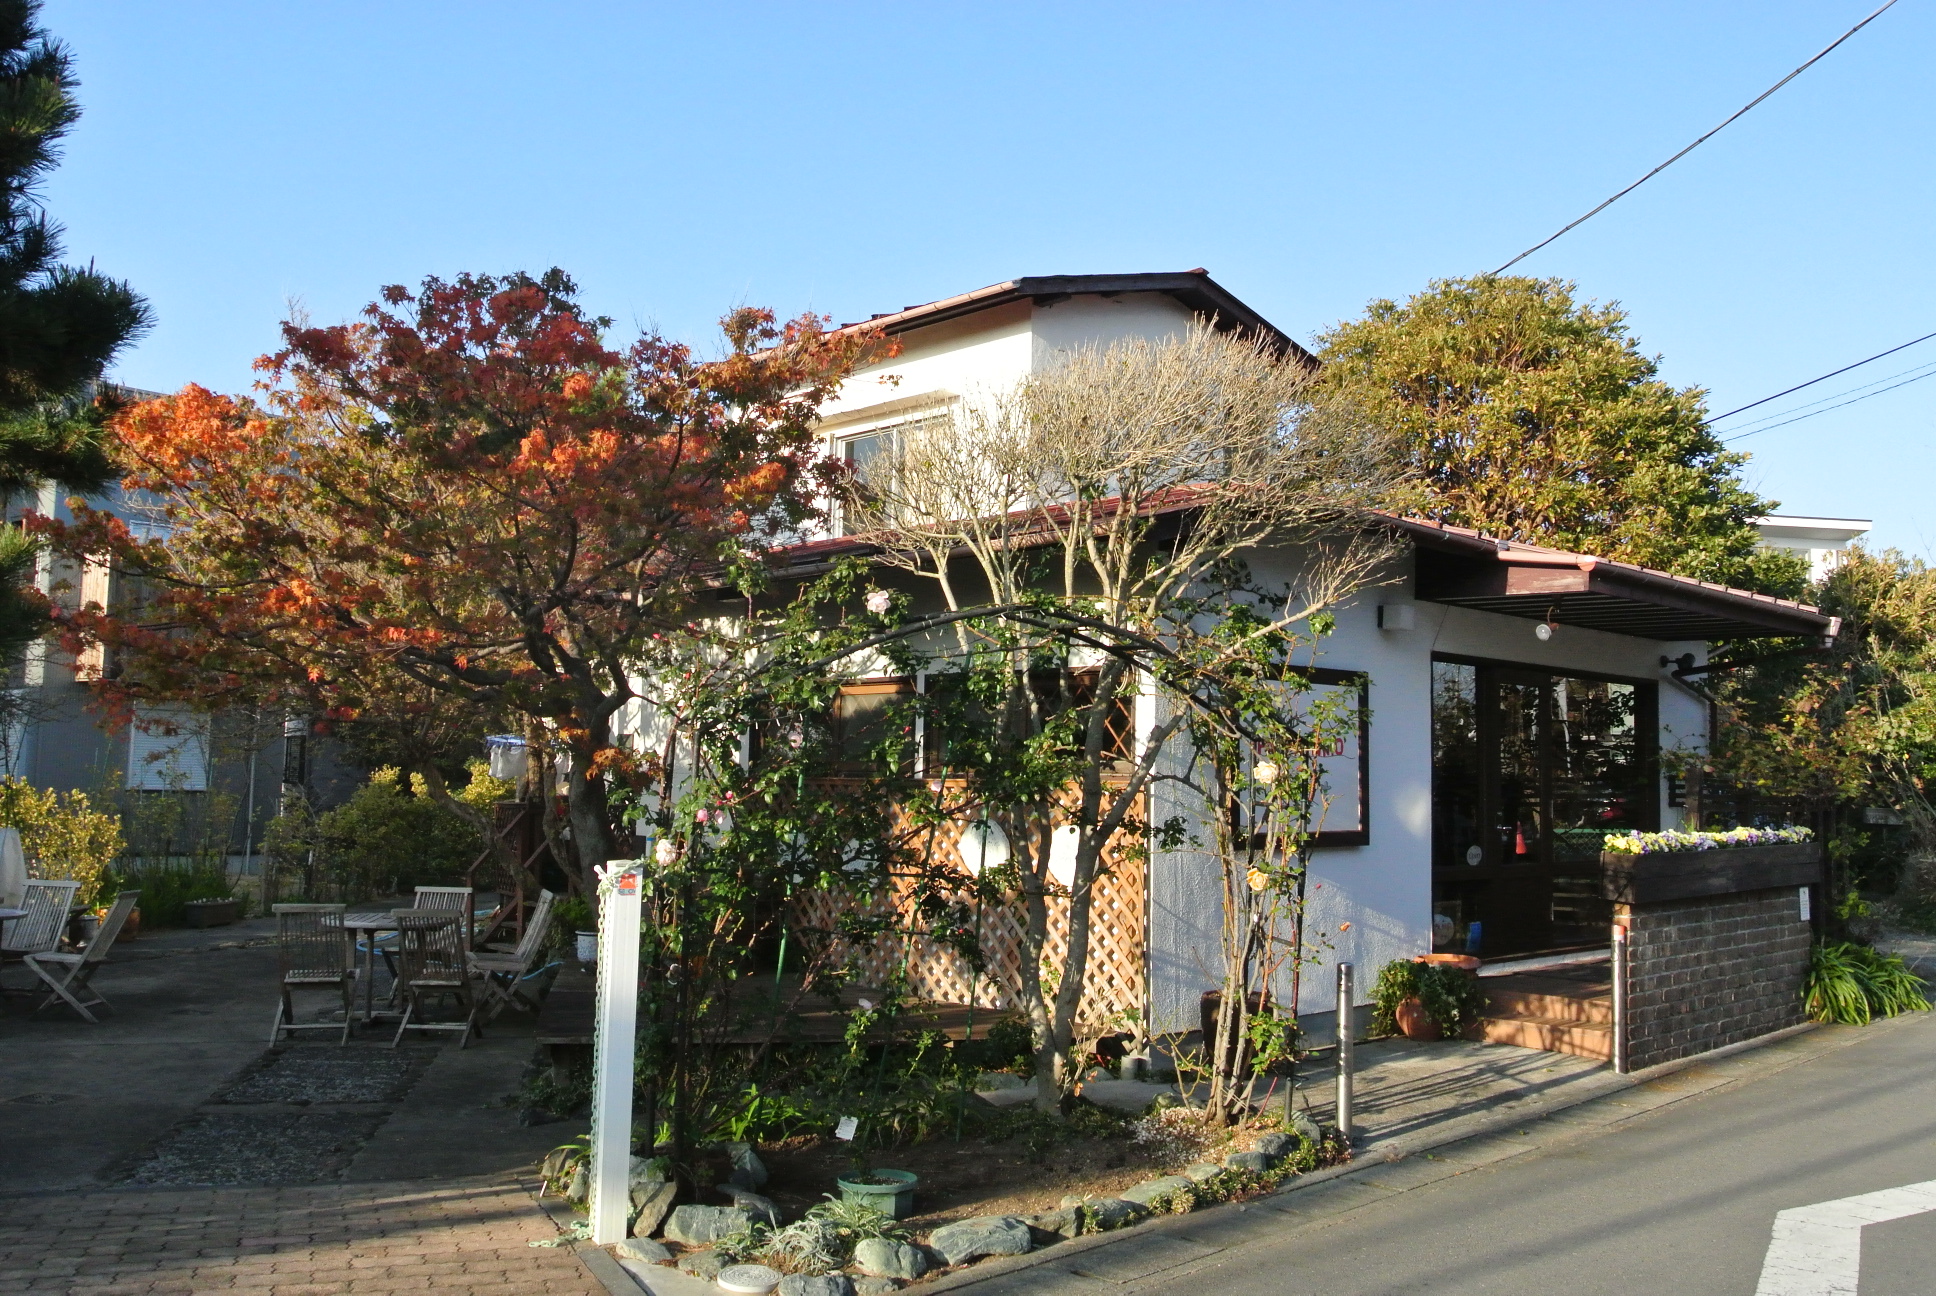 葉山珈琲パッパニーニョの外観です。木漏れ日が落ちる庭と、愛らしい店構えに引き寄せられる。